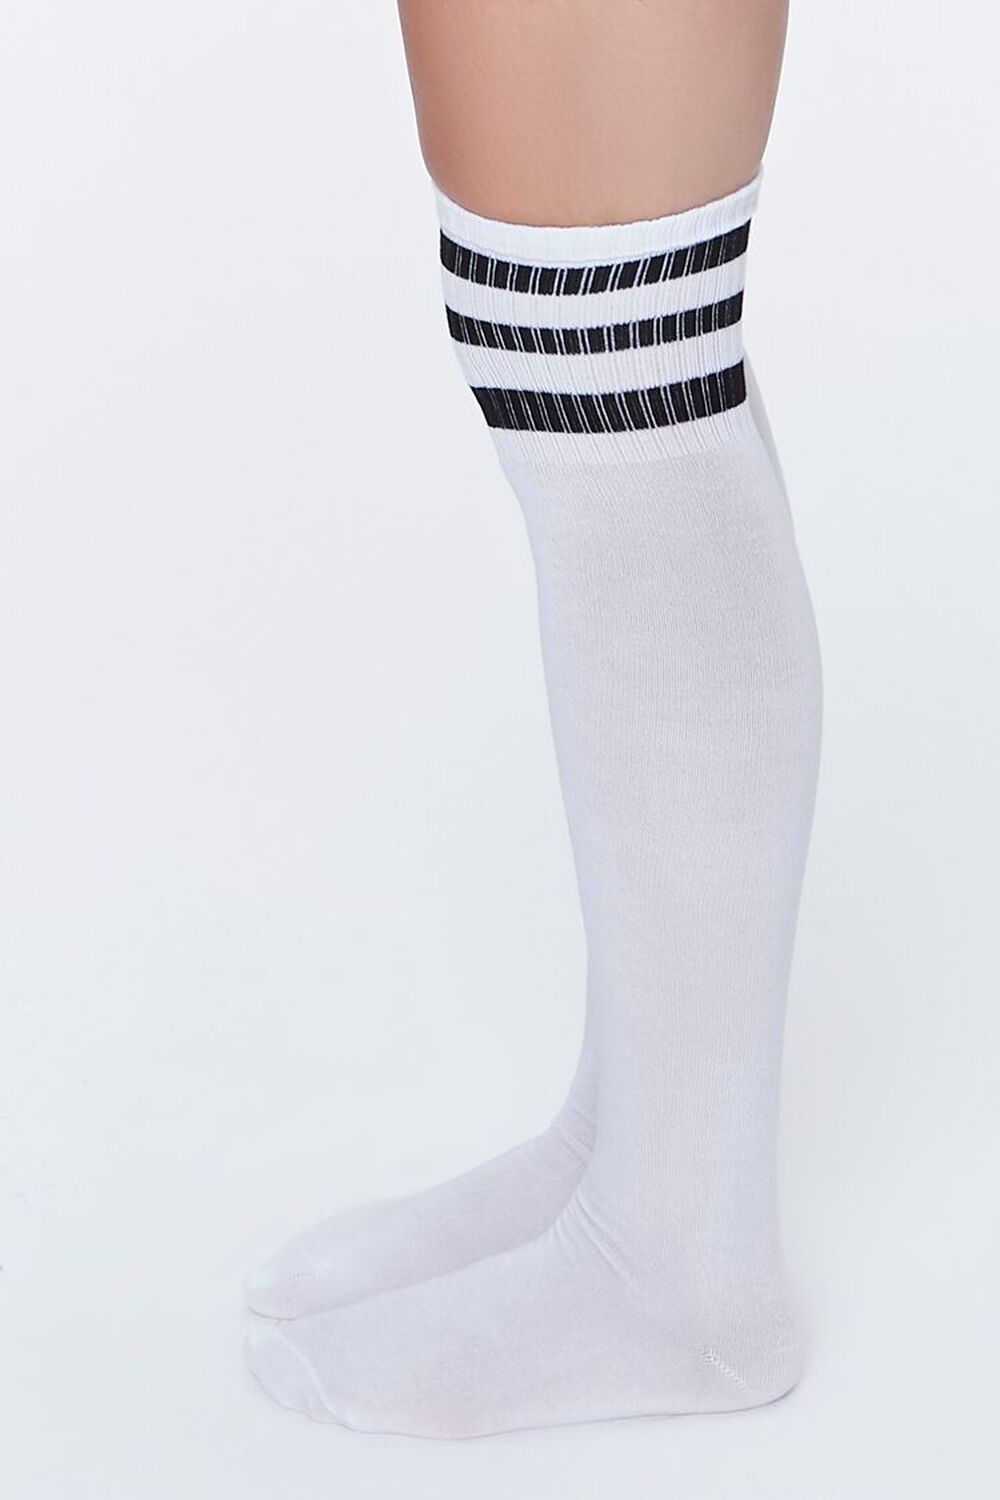 WHITE/BLACK Striped Over-the-Knee Socks, image 2